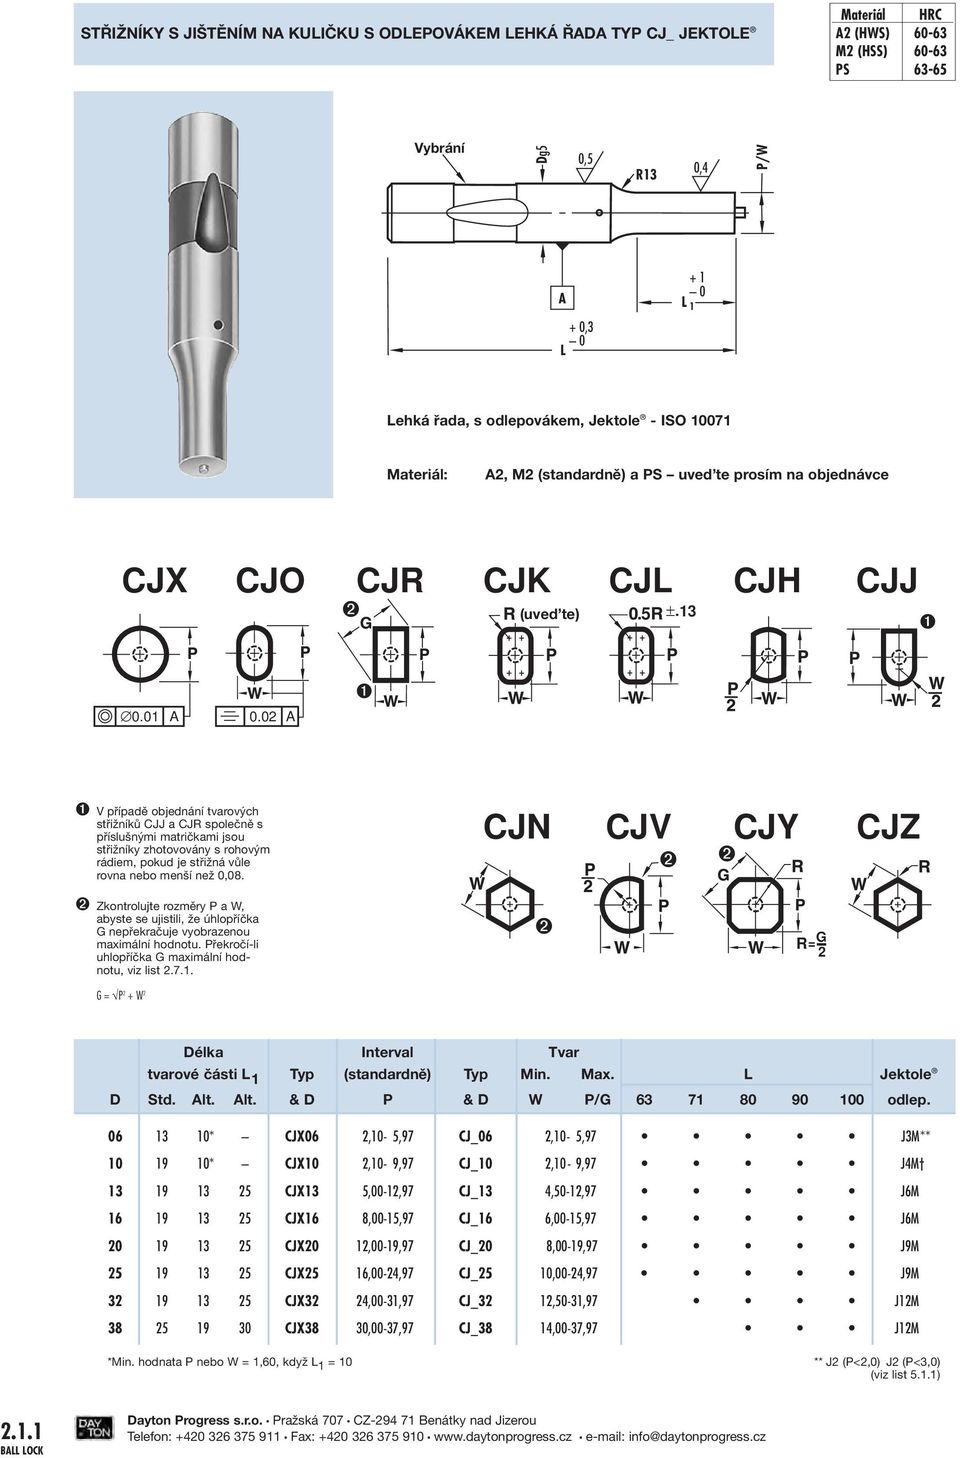 03 CJH CJJ 0.0 0.0 ➊ V případě objednání tvarových střižníků CJJ a CJ společně s příslušnými matričkami jsou střižníky zhotovovány s rohovým rádiem, pokud je střižná vůle rovna nebo menší než 0,08.